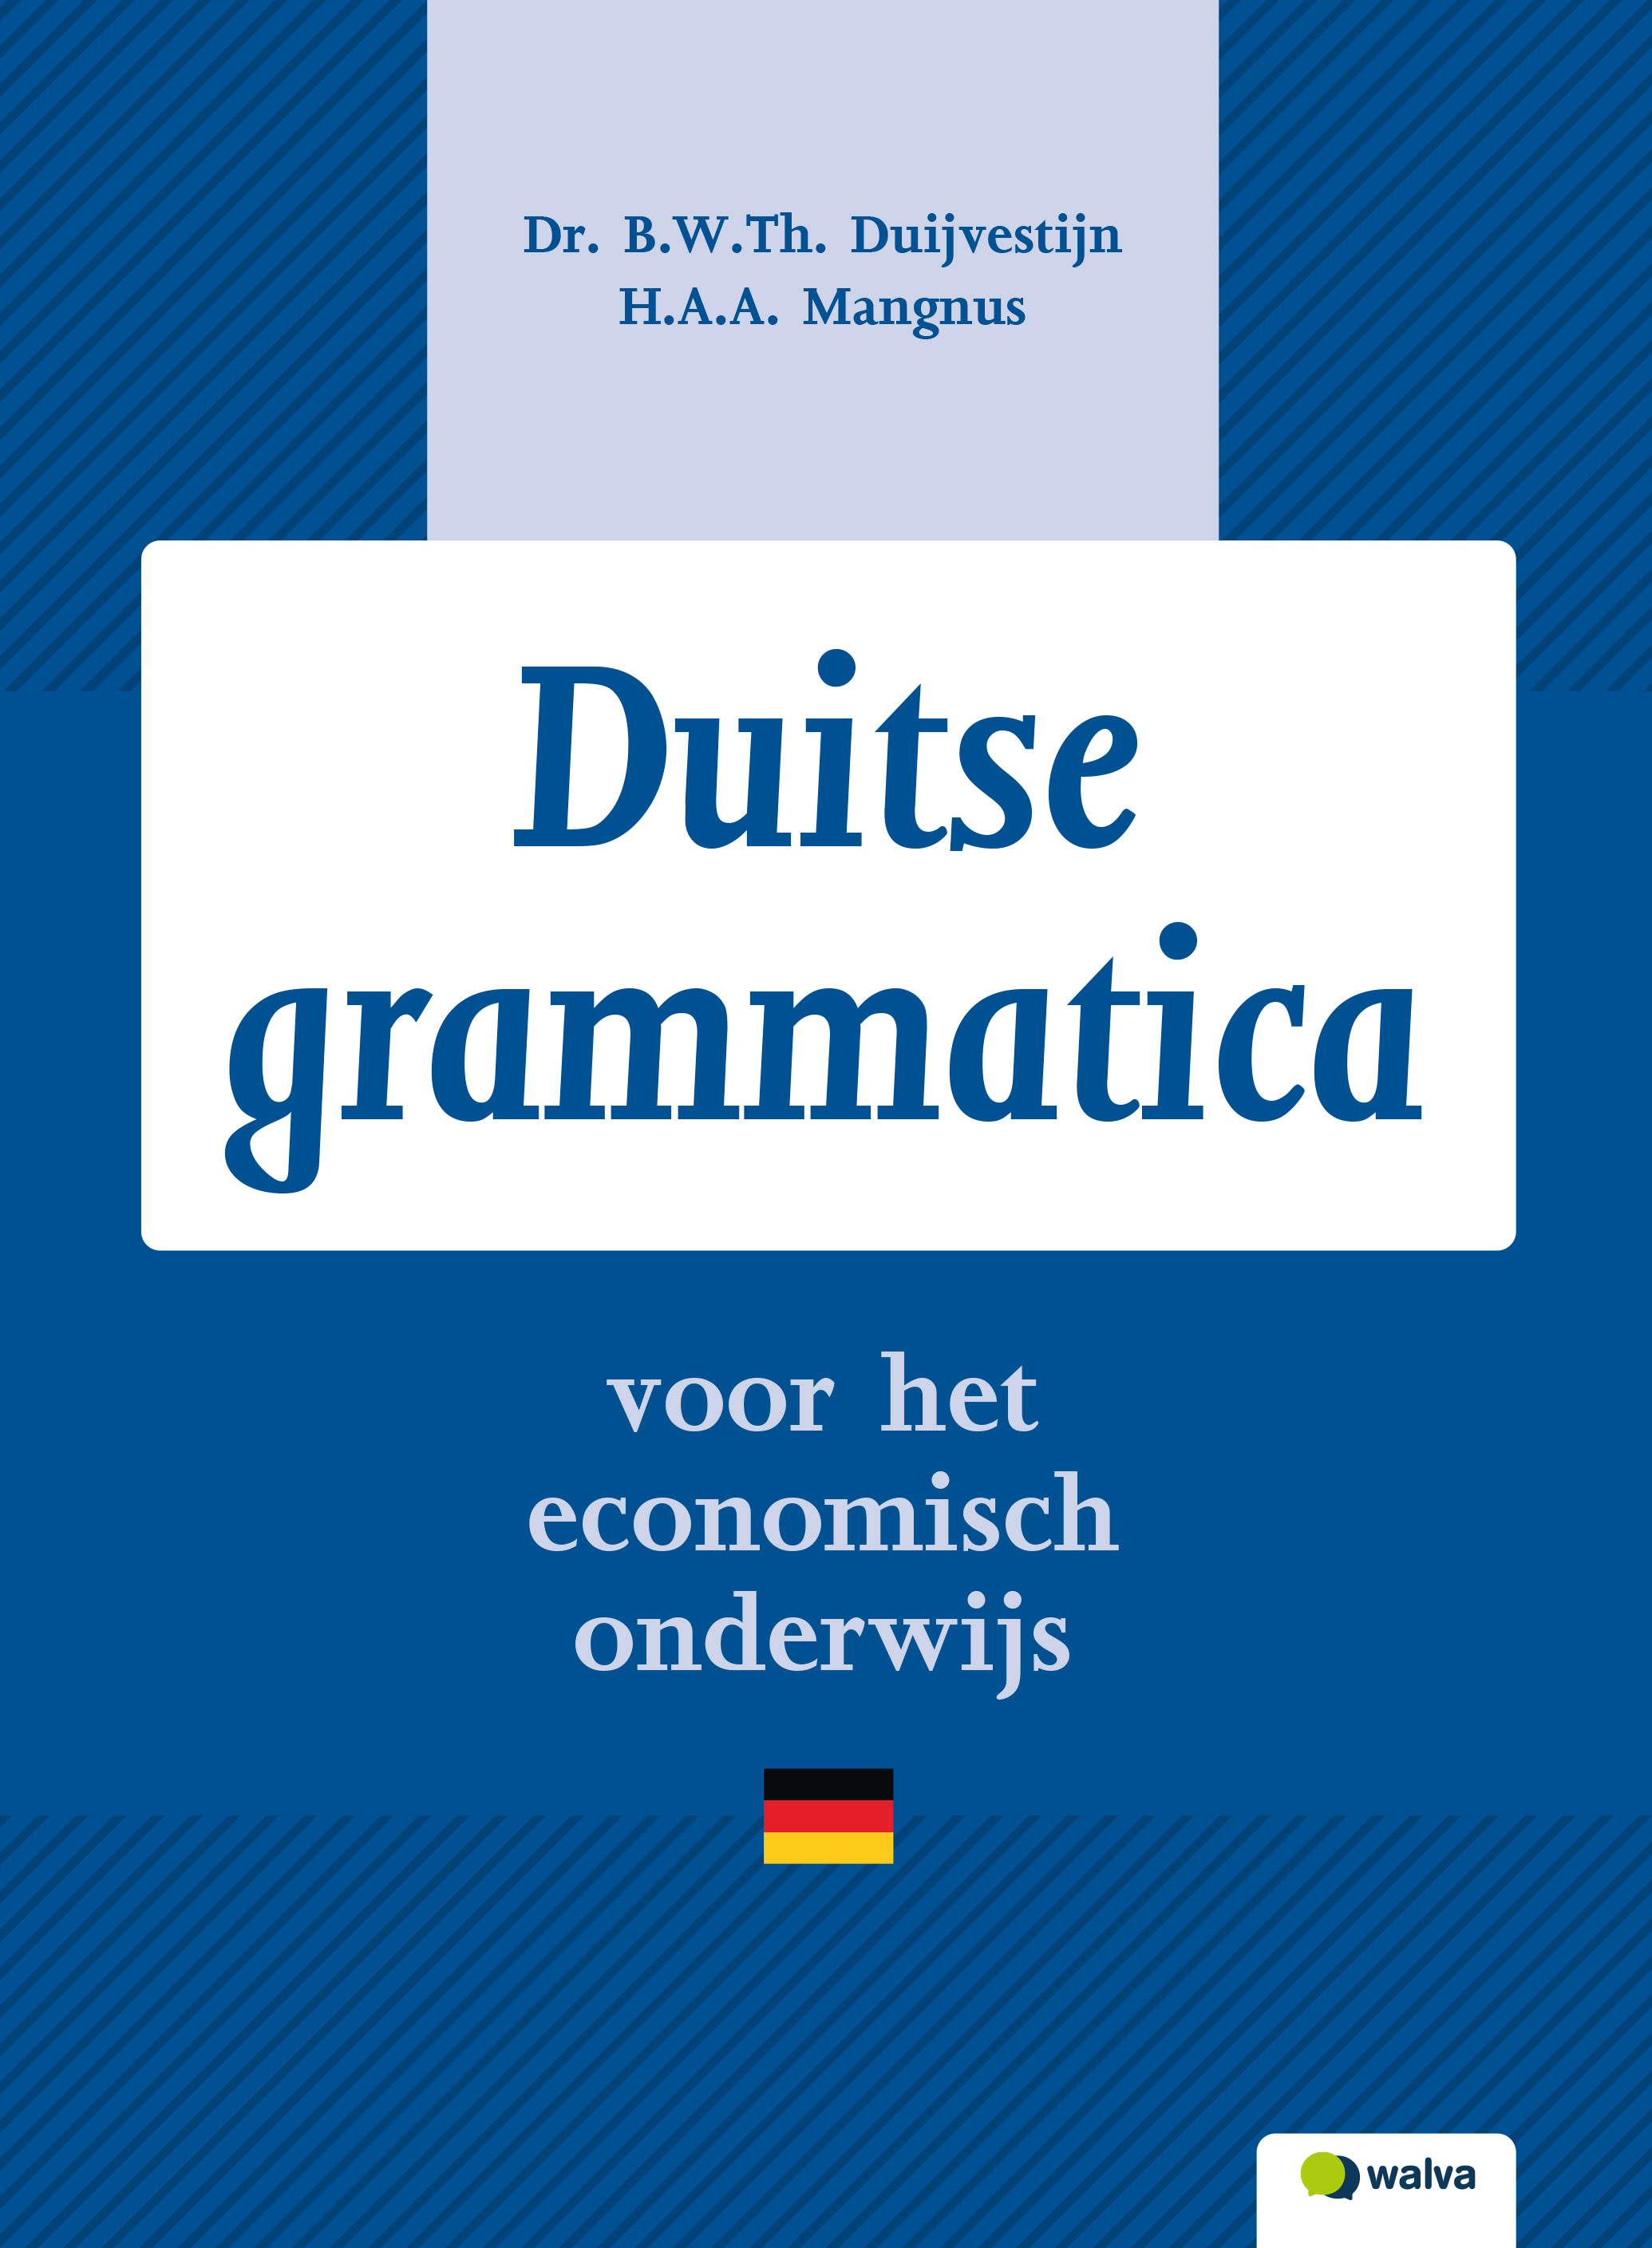 WDXGRA001 Duitse grammatica, beoordelingsexemplaar